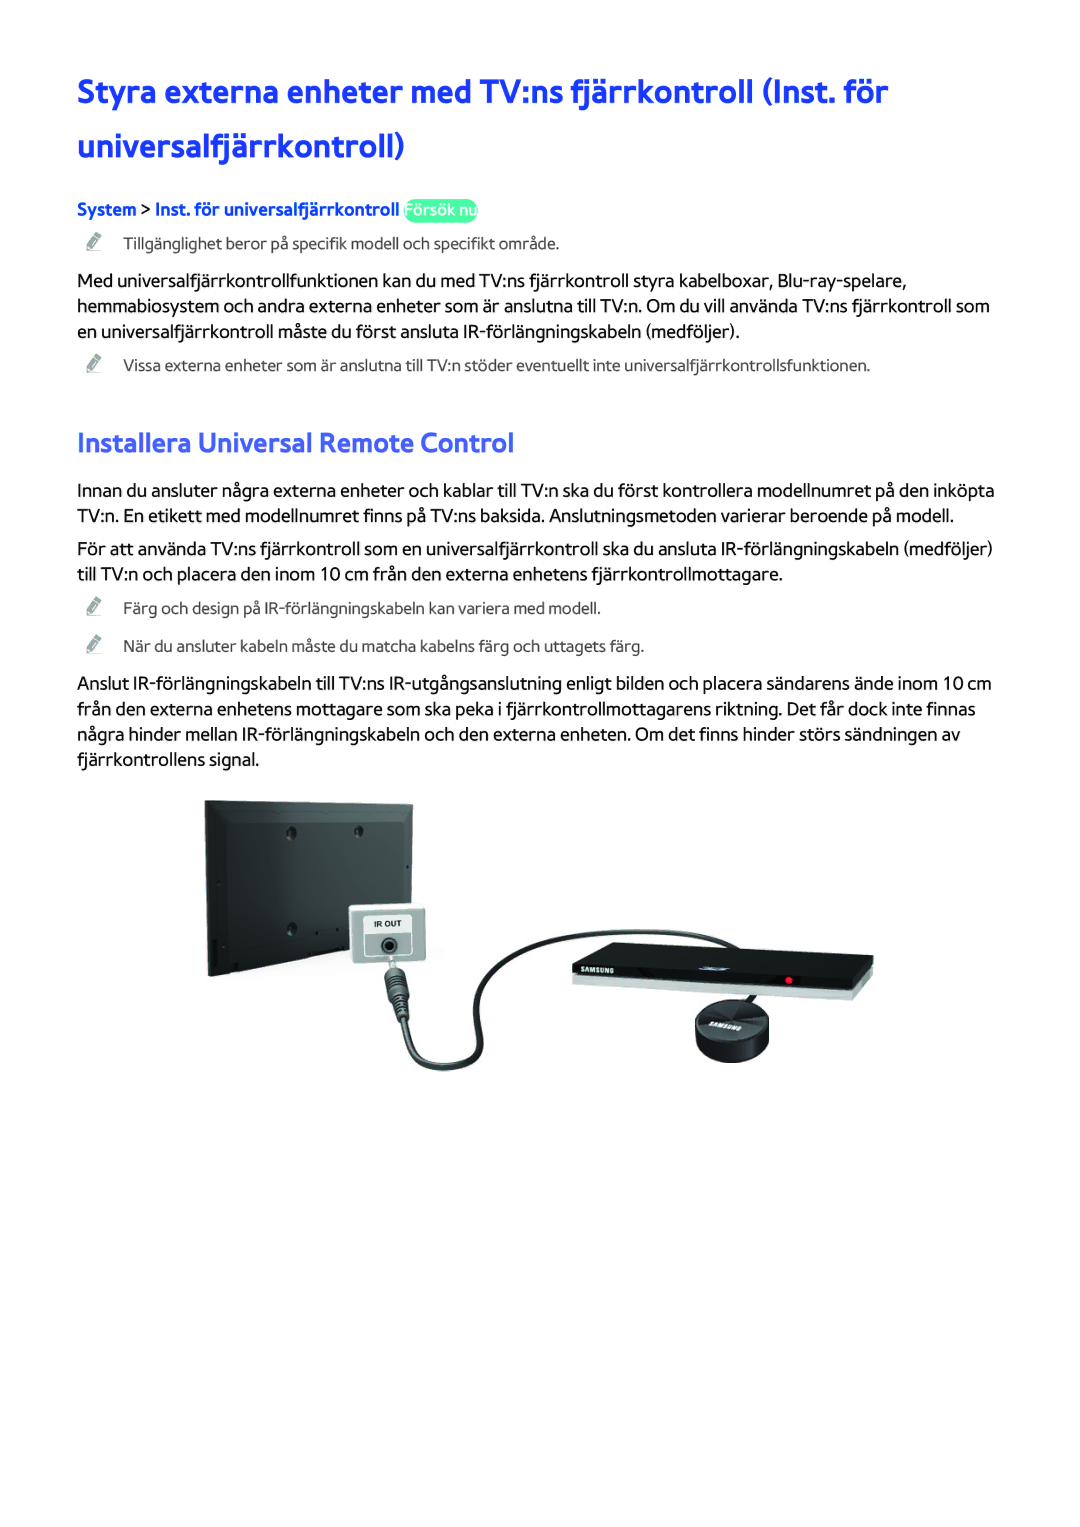 Samsung UE40H5204AKXXE manual Installera Universal Remote Control, System Inst. för universalfjärrkontroll Försök nu 